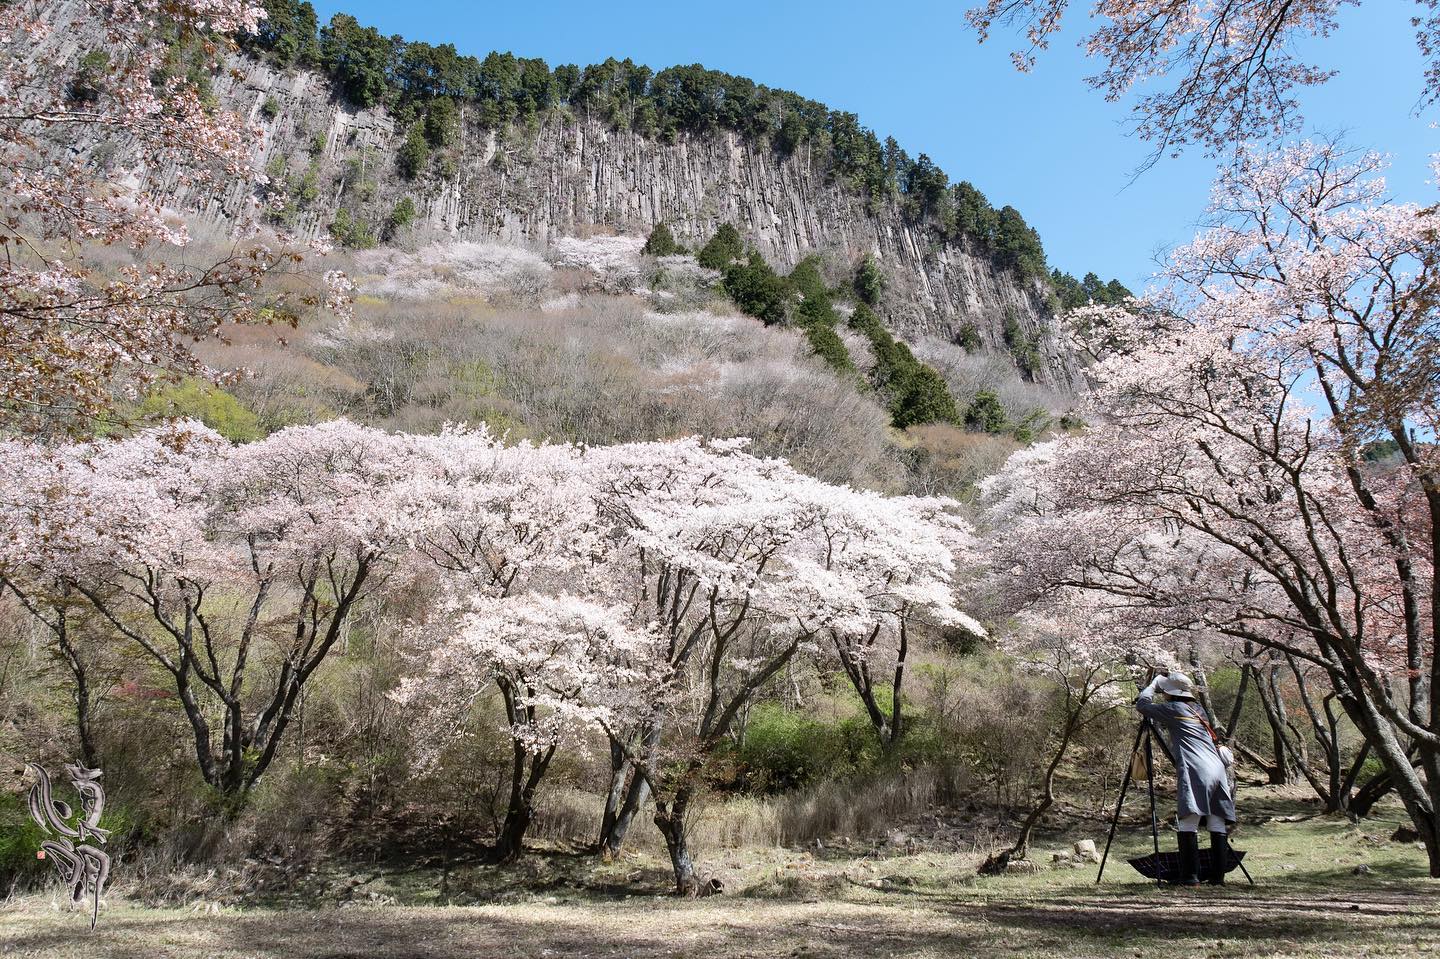 Instagram更新しました。 eg. 。こんにちは。「想いをカタチに」 和歌山のカメラマン、写真屋・はれのひ工房の末藤（スエトウ）です。桜の季節がアッという間に過ぎ去りましたが、最後の桜はいつもここ。屏風岩公苑の山桜です。山桜の大木はもちろん、開放的な空気感が大好きでいつも訪れては深く呼吸している楽な感じになります。色んな事を忘れて没頭できる場所です。数年前には一日中居たこともありました。(笑)写真はダゲレオタイプの銀盤写真でしょうか？アオリを使ってじっくり撮られている方がいらっしゃったので後ろ姿を入れさせてもらいました。デジタルカメラでパシャパシャ撮るのも良いですが、一枚の写真をじっくりと撮るのも贅沢と言うかすごい楽しみが詰まっていると感じます。 – from Instagram